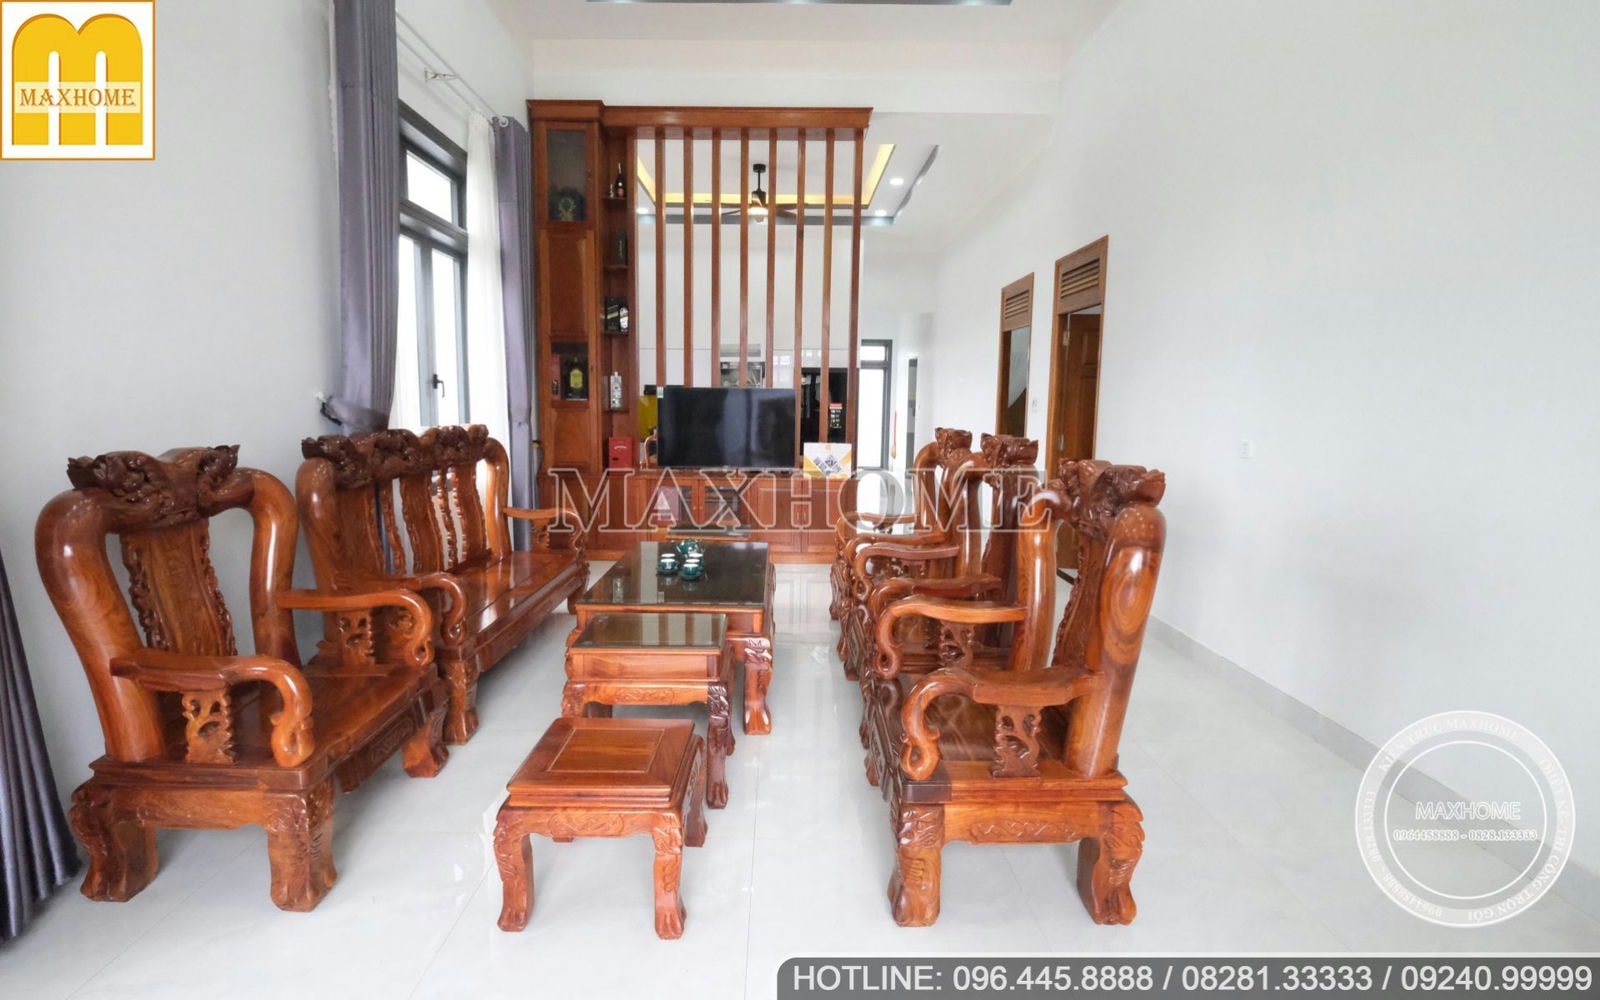 Bộ nội thất gỗ cực xịn cho ngôi nhà vườn mái Thái do Maxhome thi công trọn gói